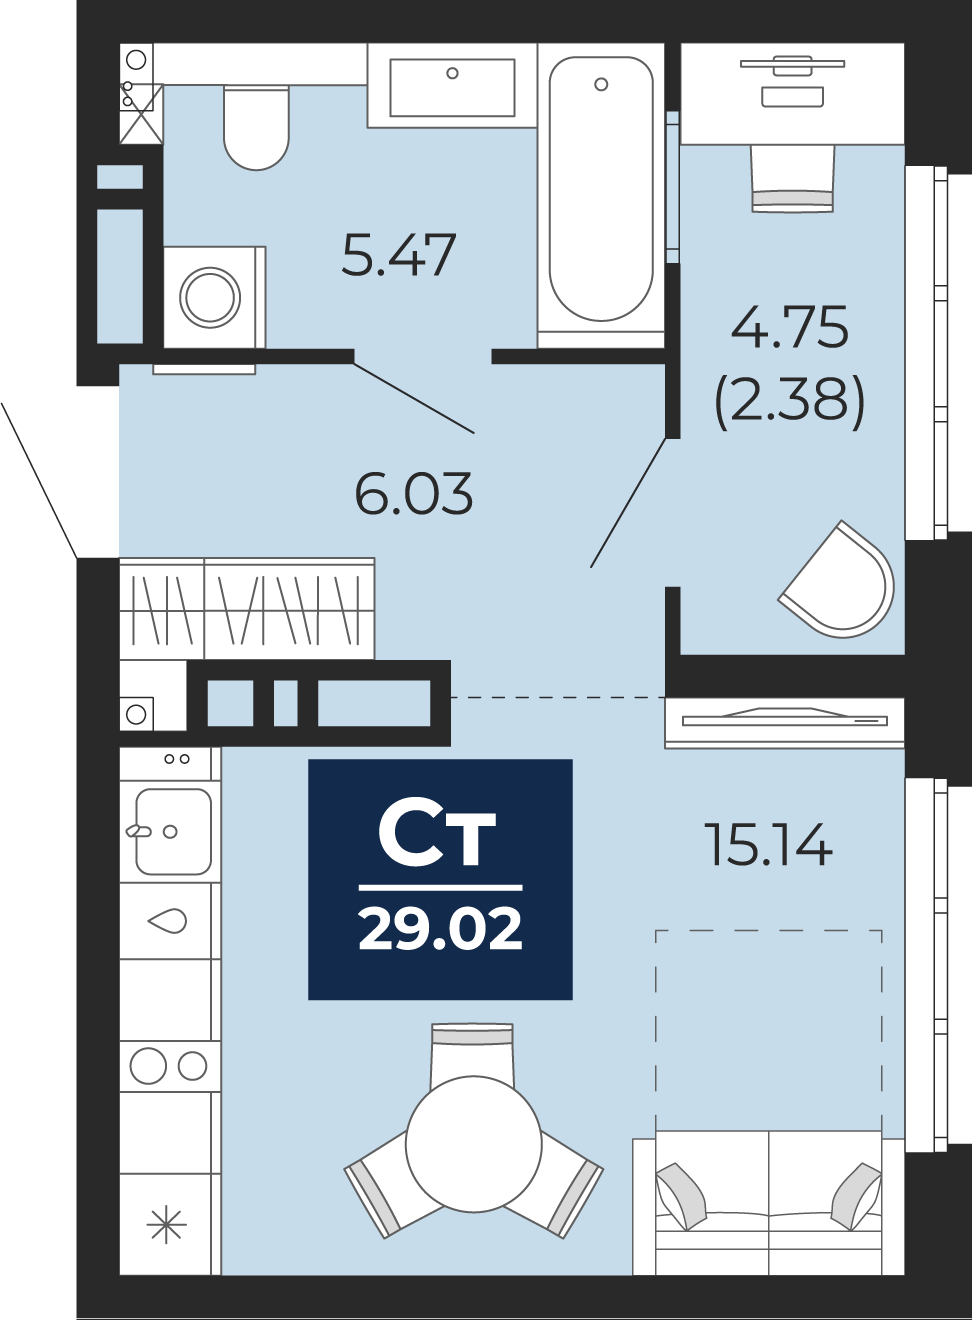 Квартира № 375, Студия, 29.02 кв. м, 12 этаж